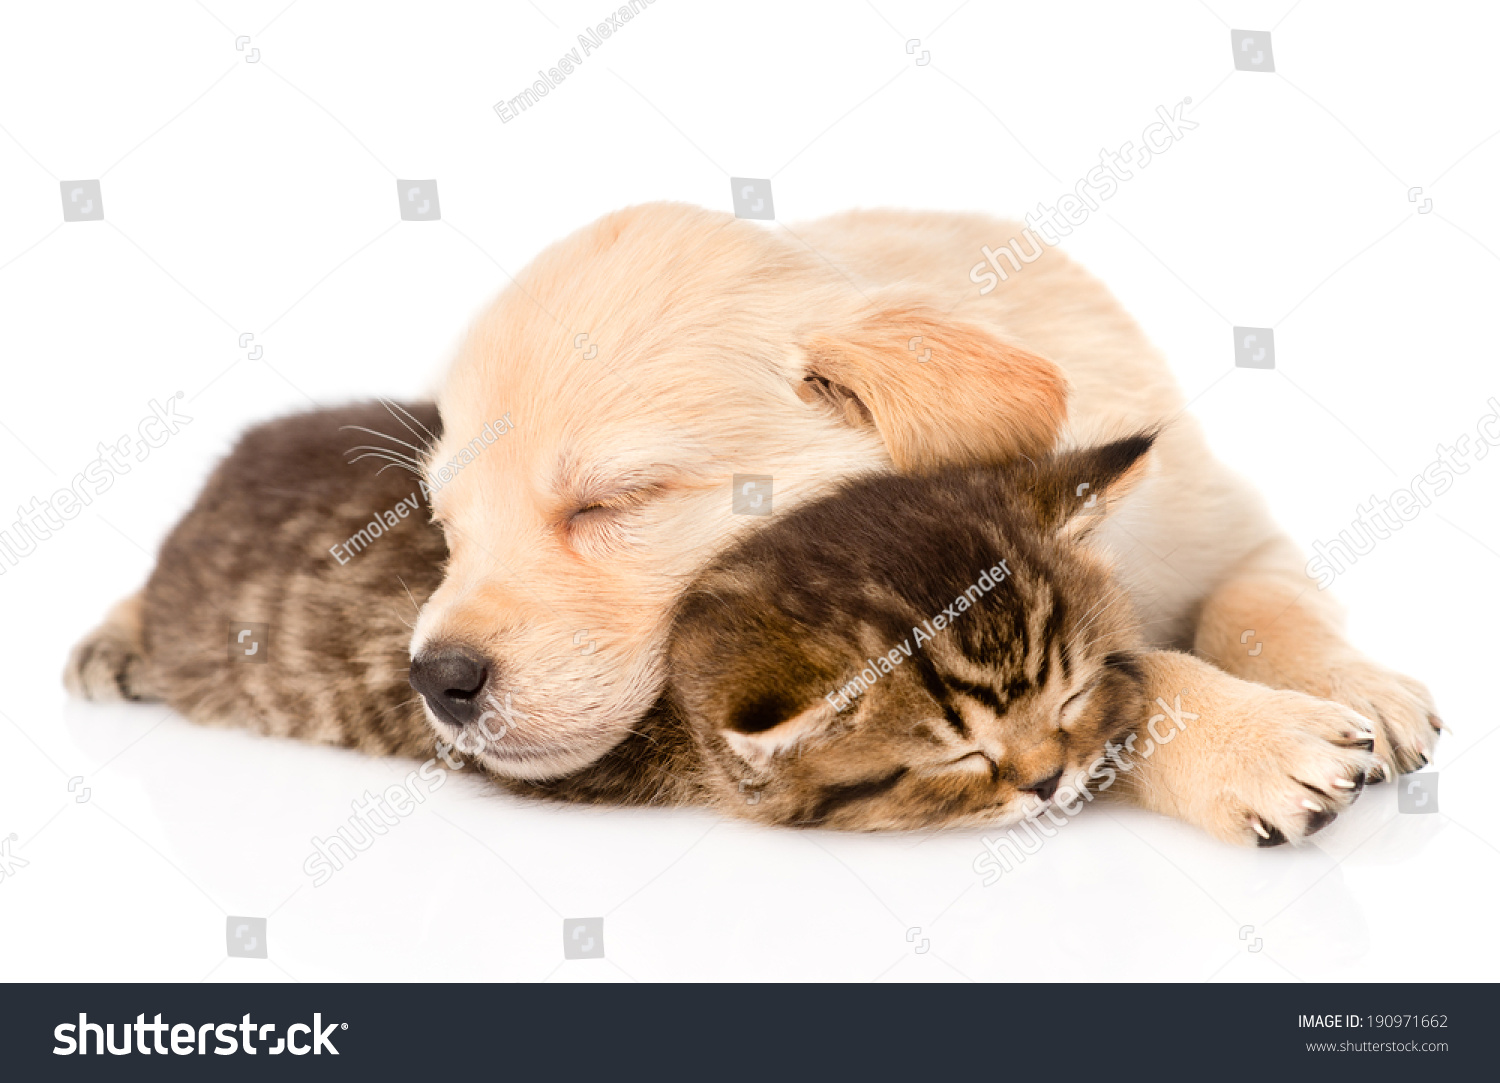 golden retriever puppy kitten